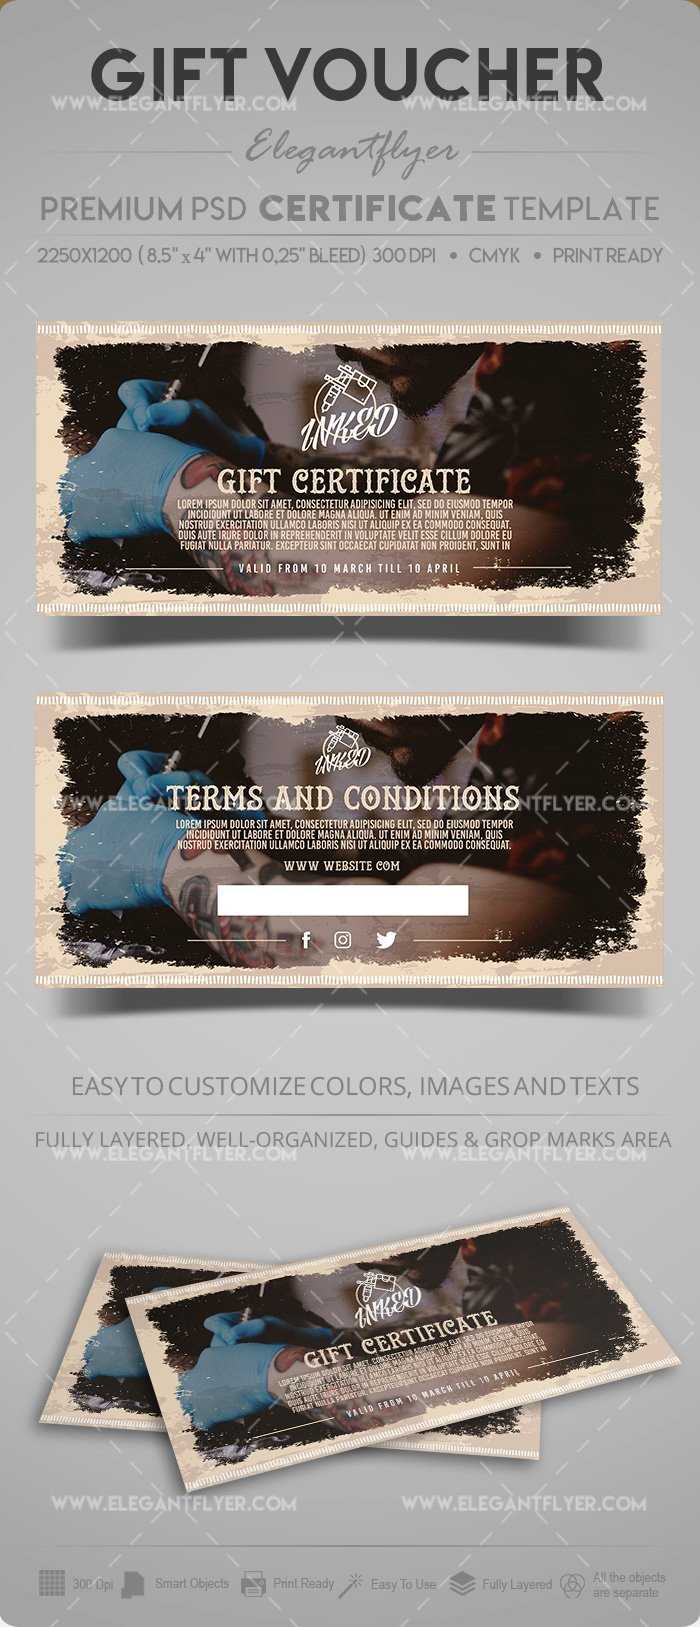 Tattoo Salon – Gift Certificate Template In Psd With Gift Certificate Template Photoshop